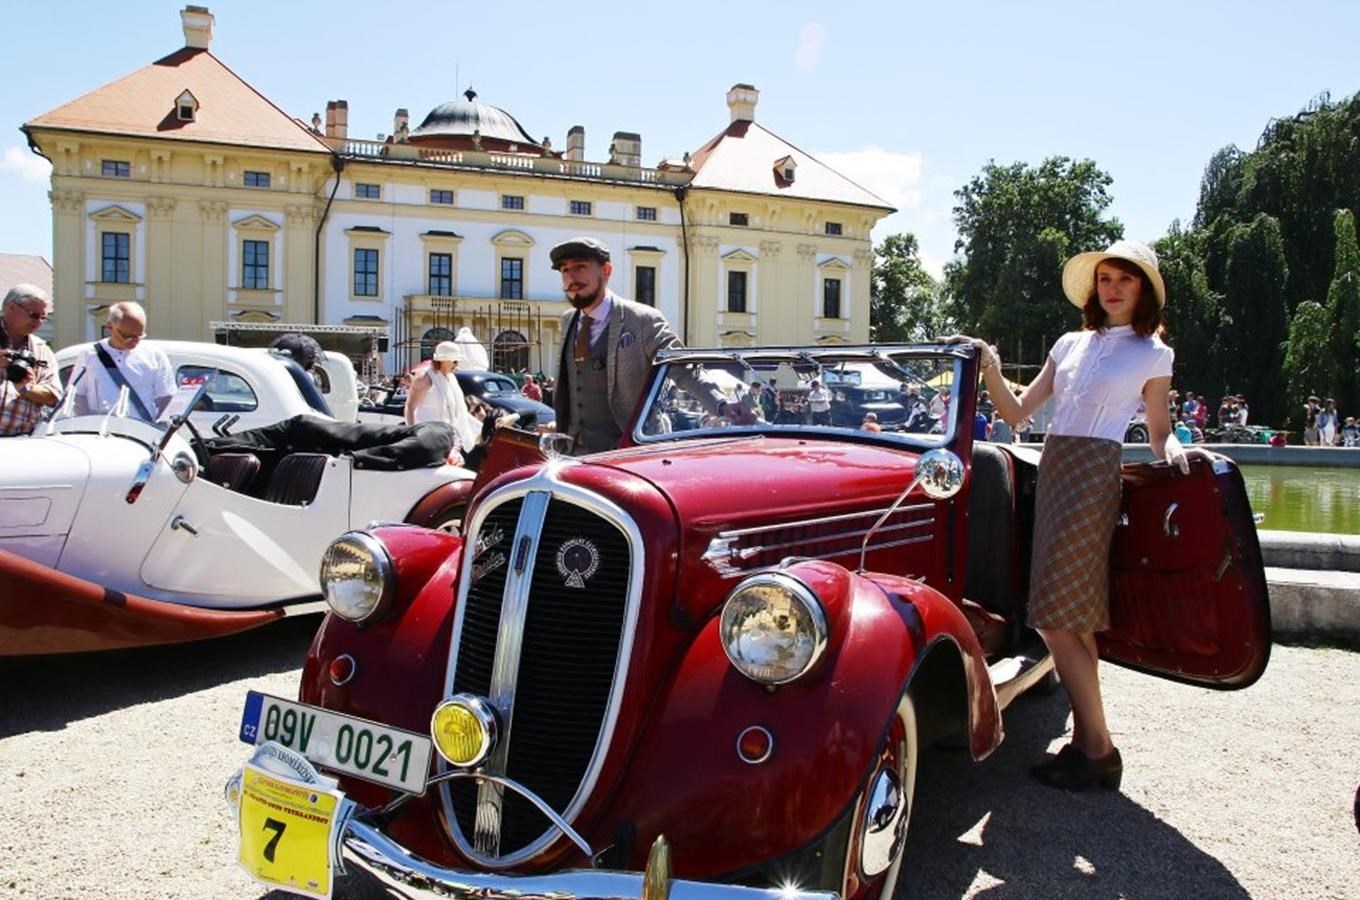 Potěšte se krásou historických vozidel na zámku ve Slavkově